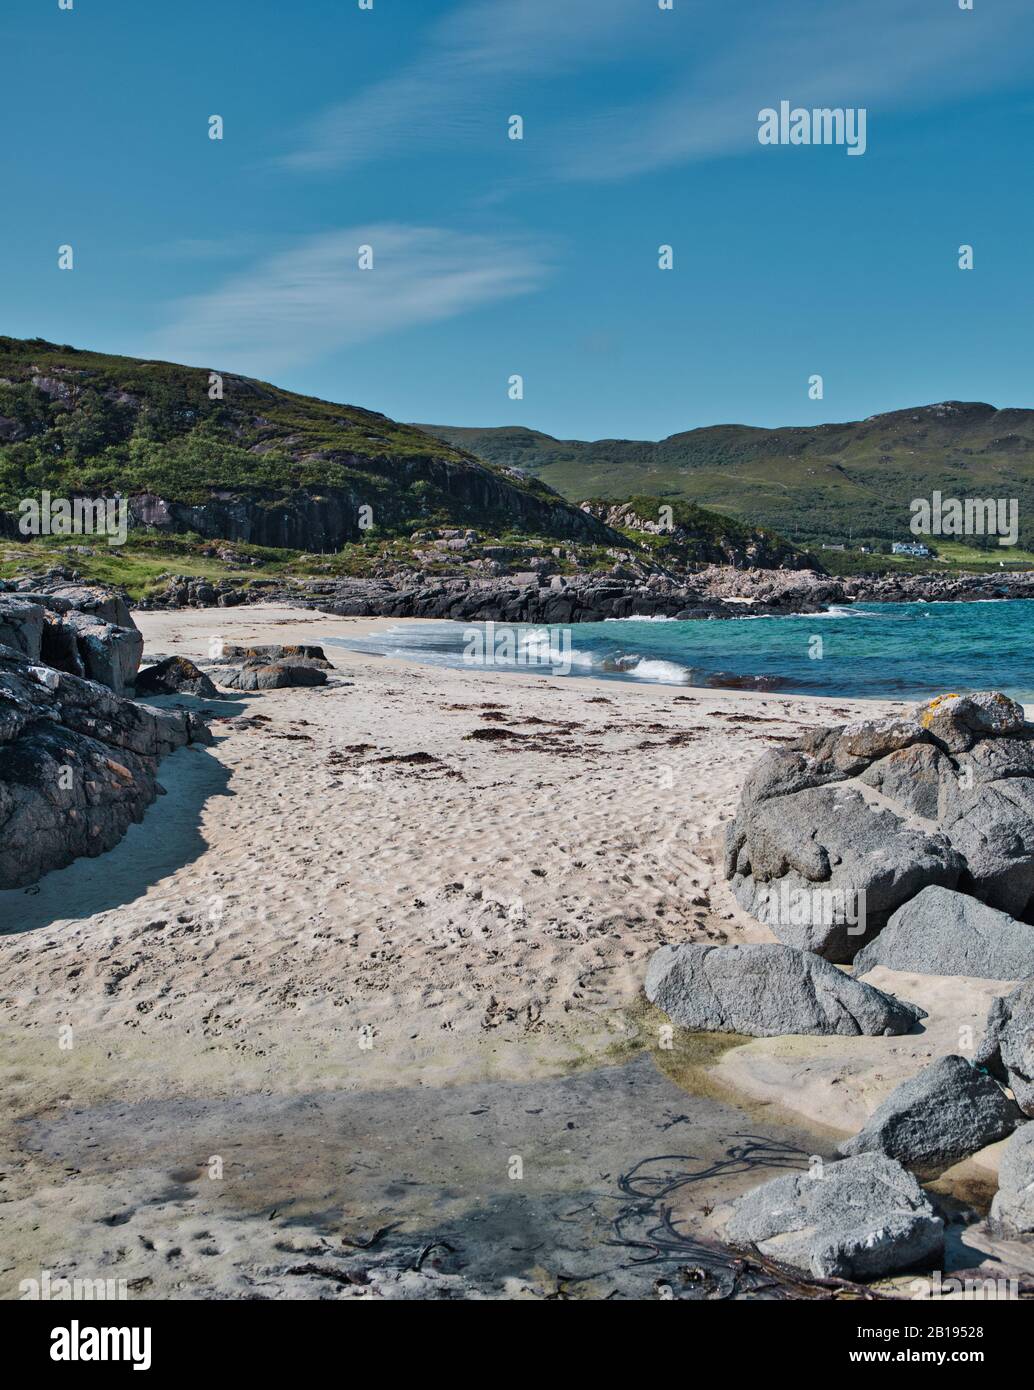 Vagues se brisant sur la plage de Sanna Bay sur la péninsule sauvage et éloignée d'Ardnamurchan, Lochaber, Écosse Banque D'Images